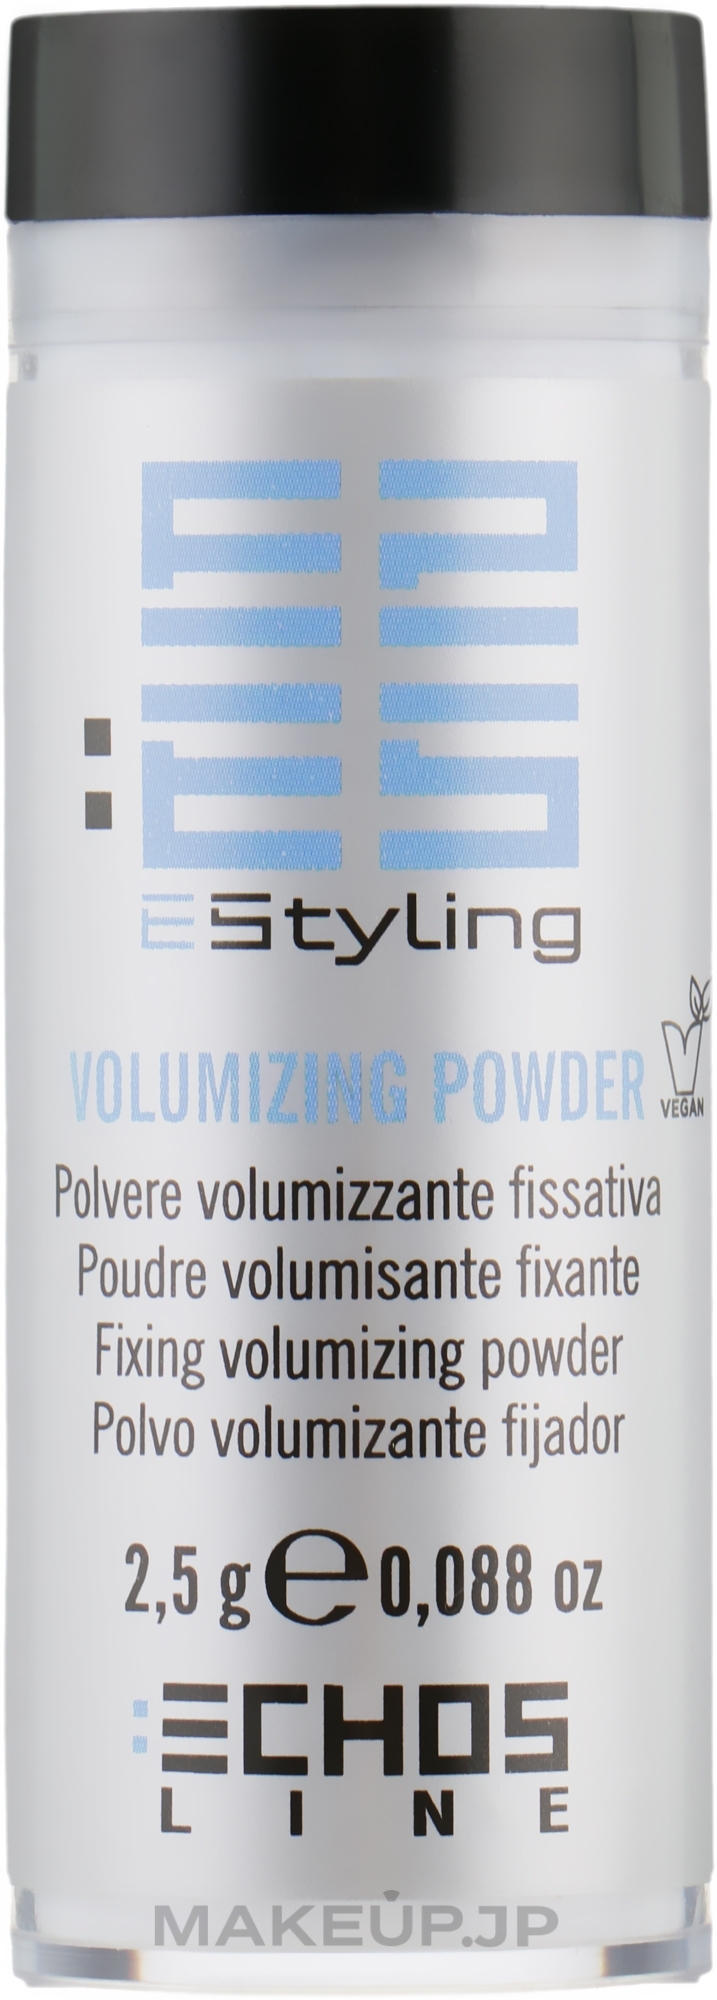 Hair Powder - Echosline Styling Volumizing Powder — photo 2.5 g